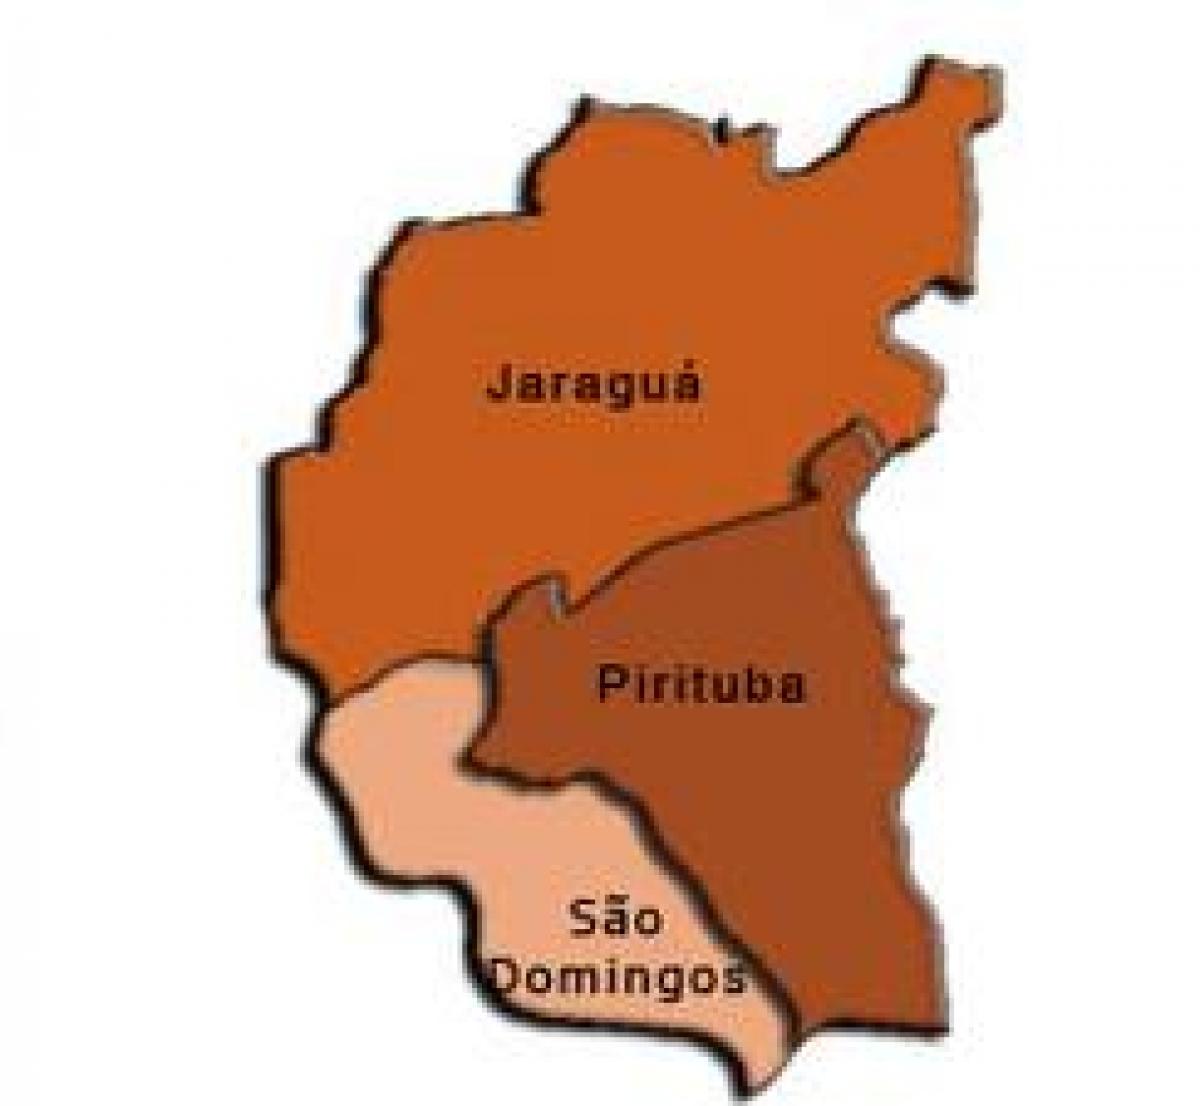 Քարտեզ Pirituba-Жарагуа супрефектур